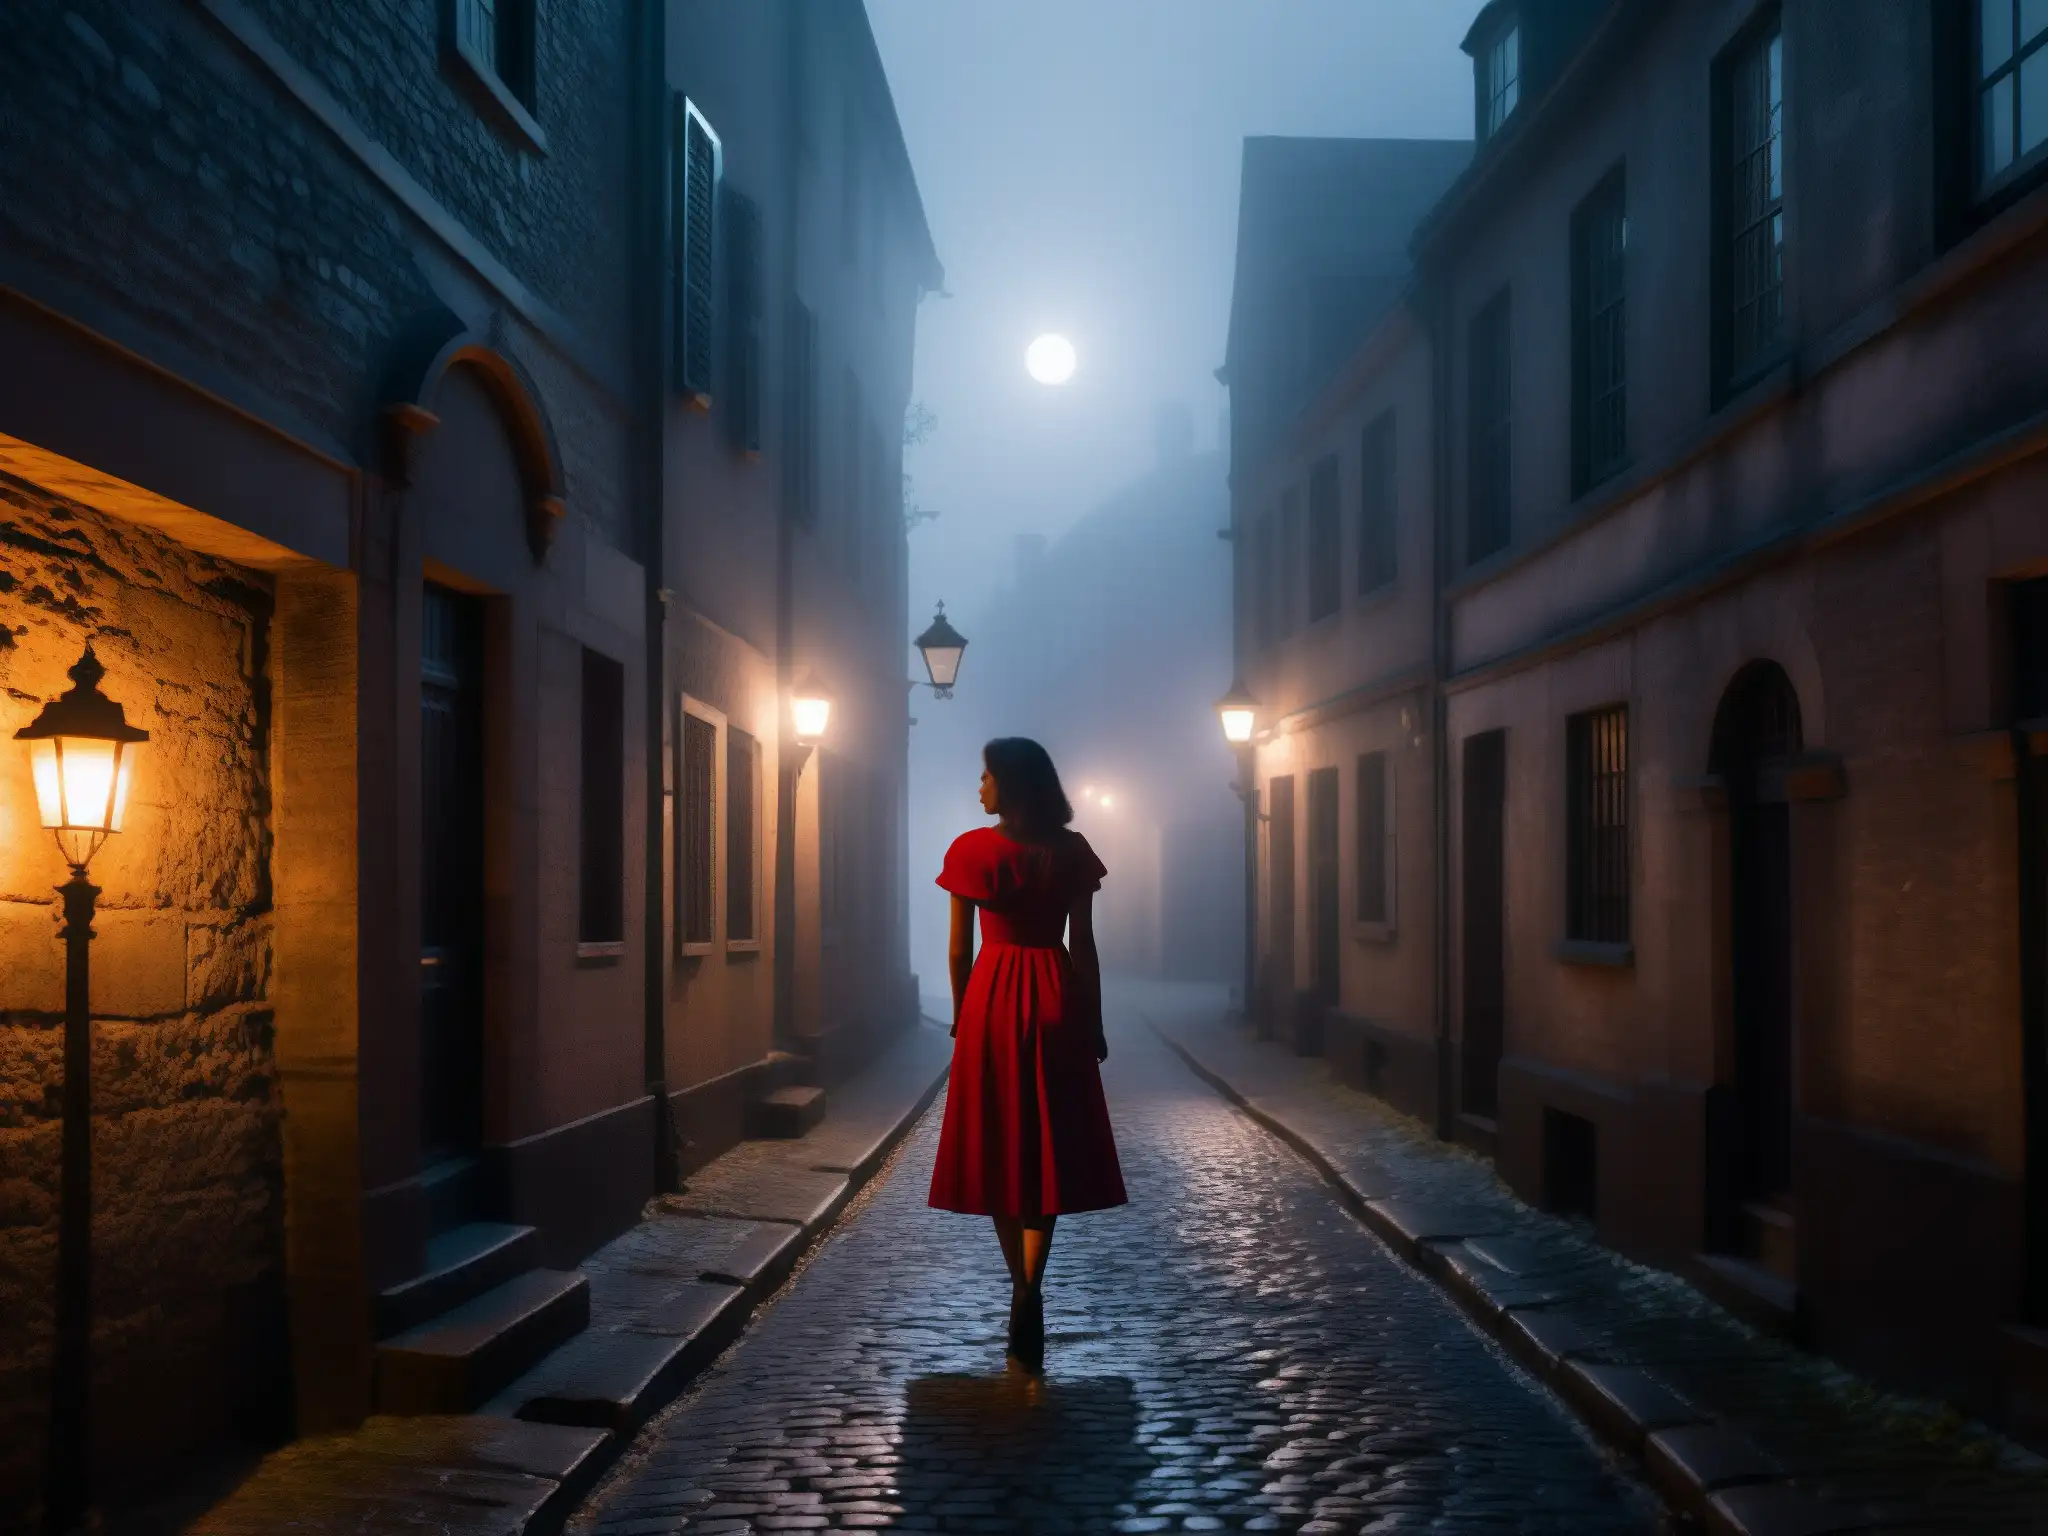 Dama de Rojo en la calle Quemada: misteriosa silueta en la noche, envuelta en niebla, creando una atmósfera inquietante y mítica